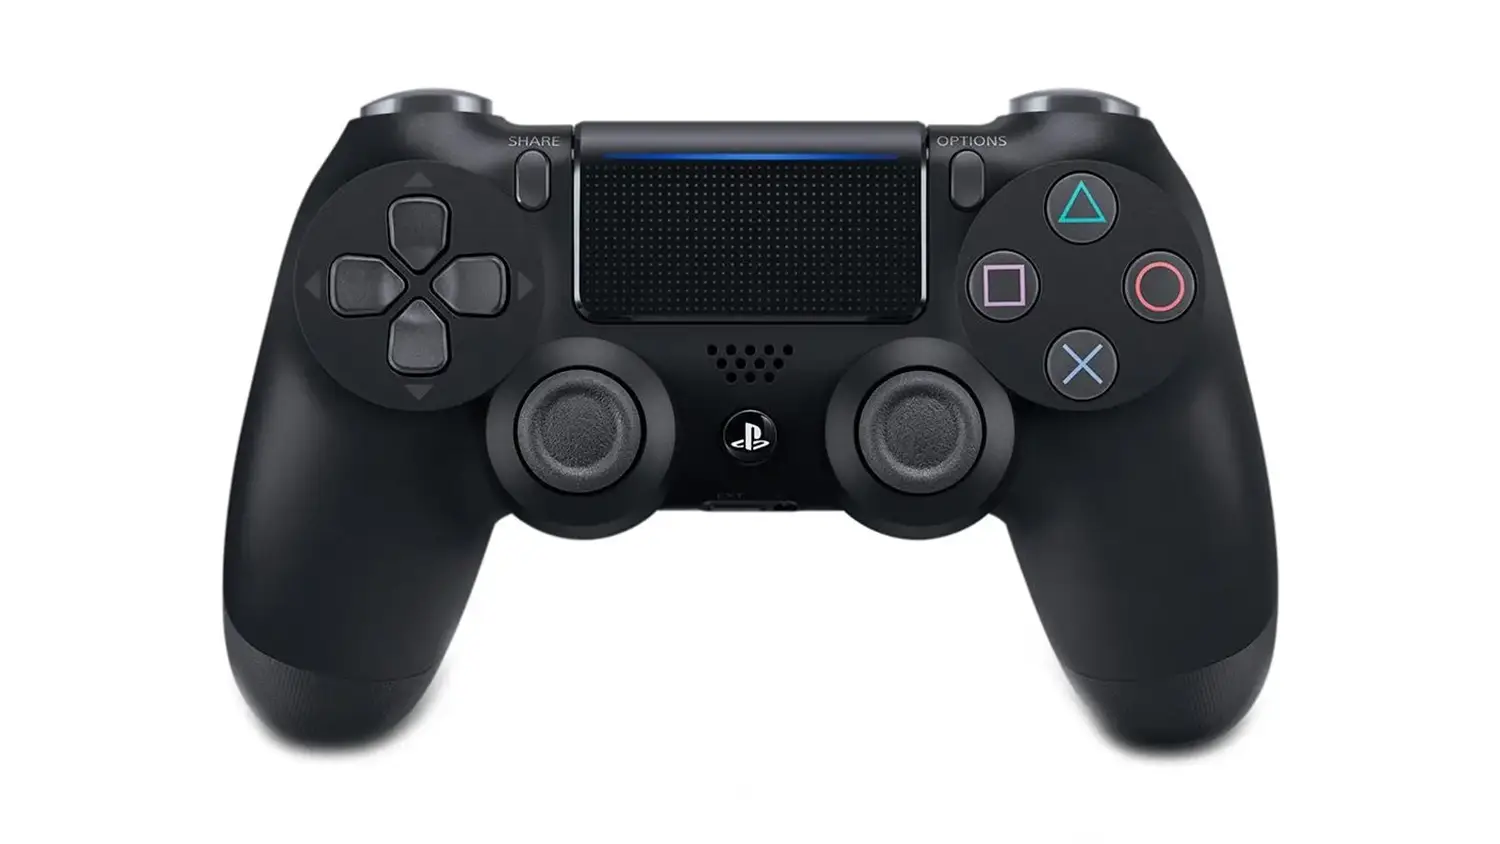 Ofertas do dia: PlayStation 5 em promoção no KaBuM! Confira o preço - Olhar  Digital